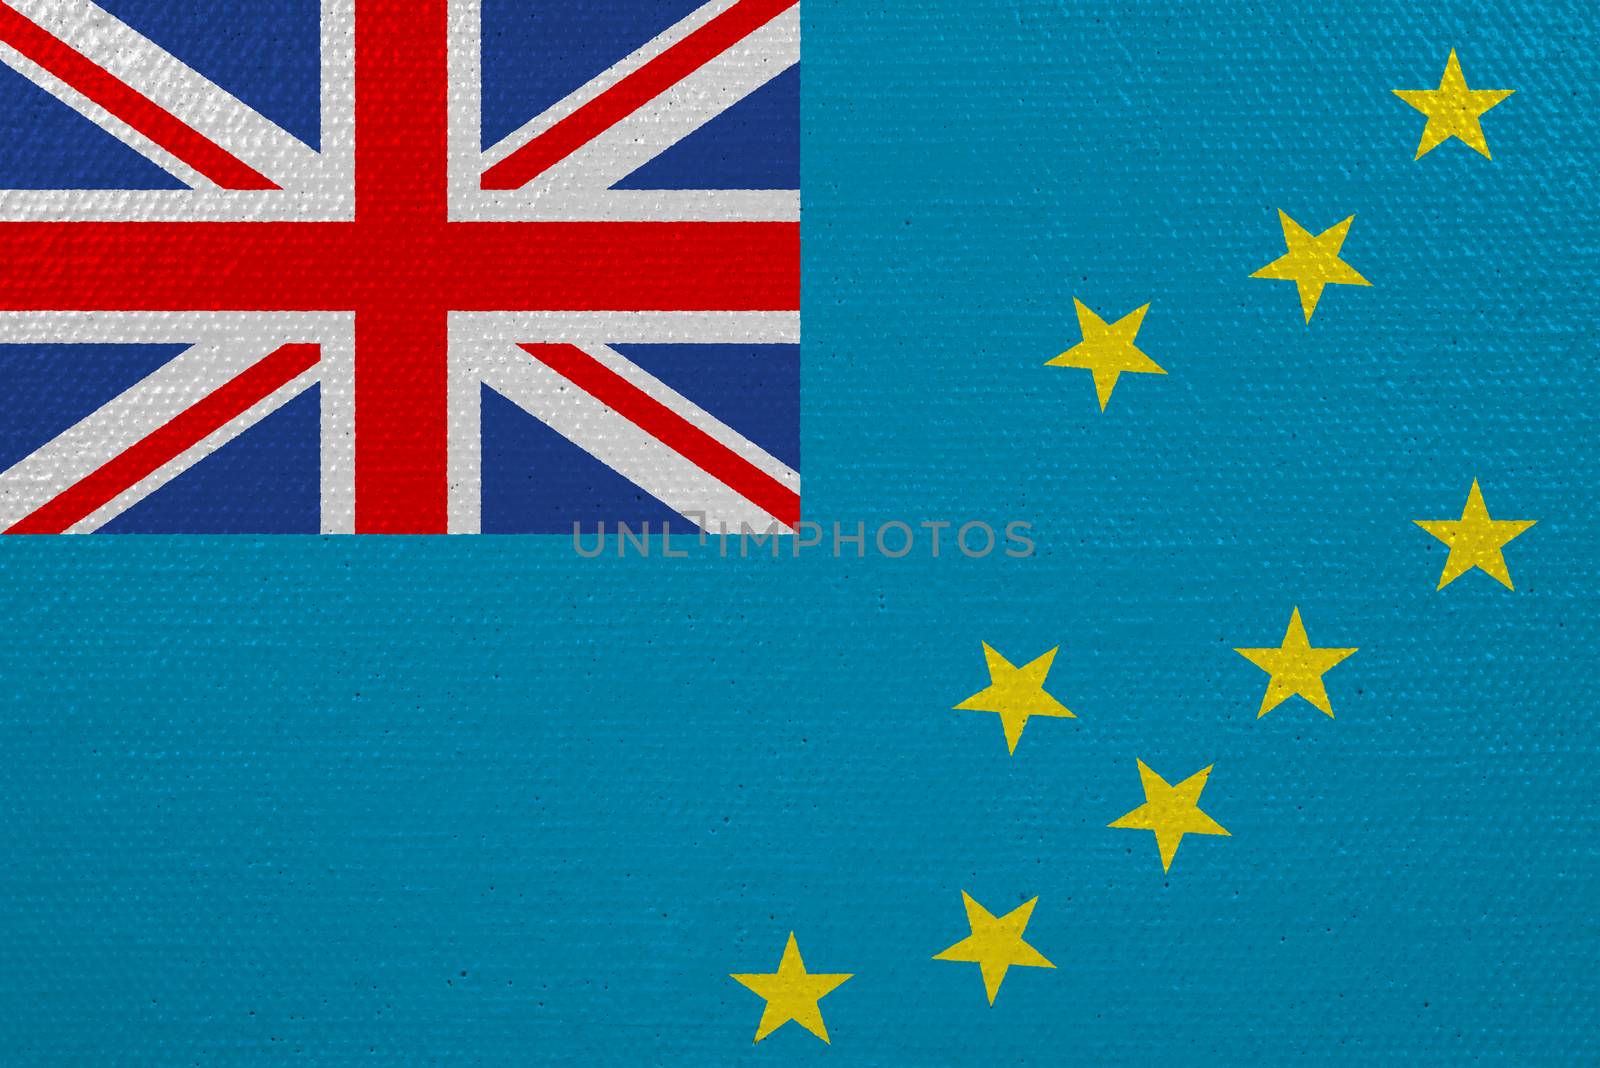 Tuvalu flag on canvas. Patriotic background. National flag of Tuvalu